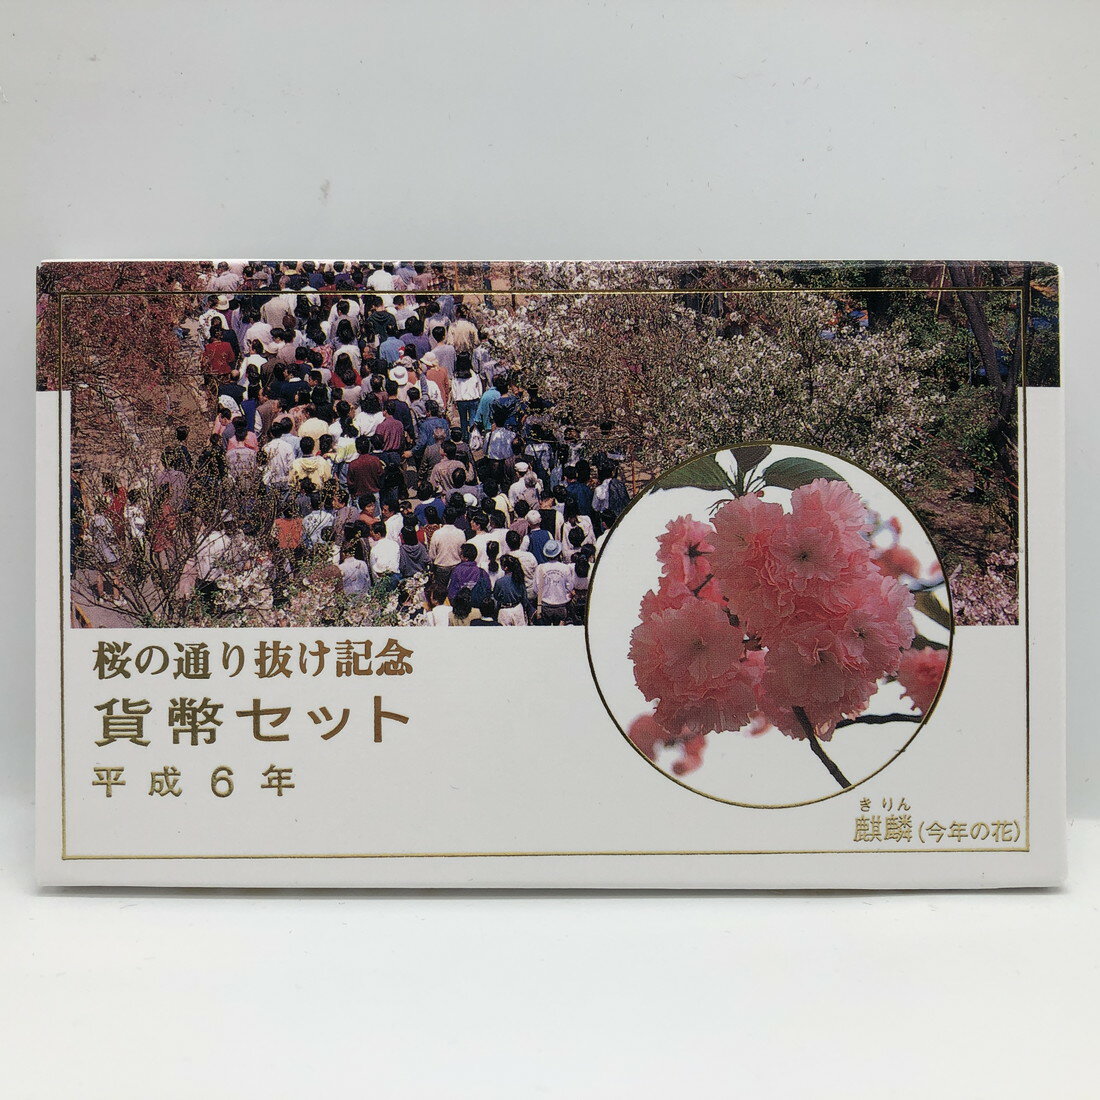 桜の通り抜け 平成6年 貨幣セット 麒麟（1994年）純銀 メダル入り 記念硬貨 記念コイン 造幣局 ミントセット